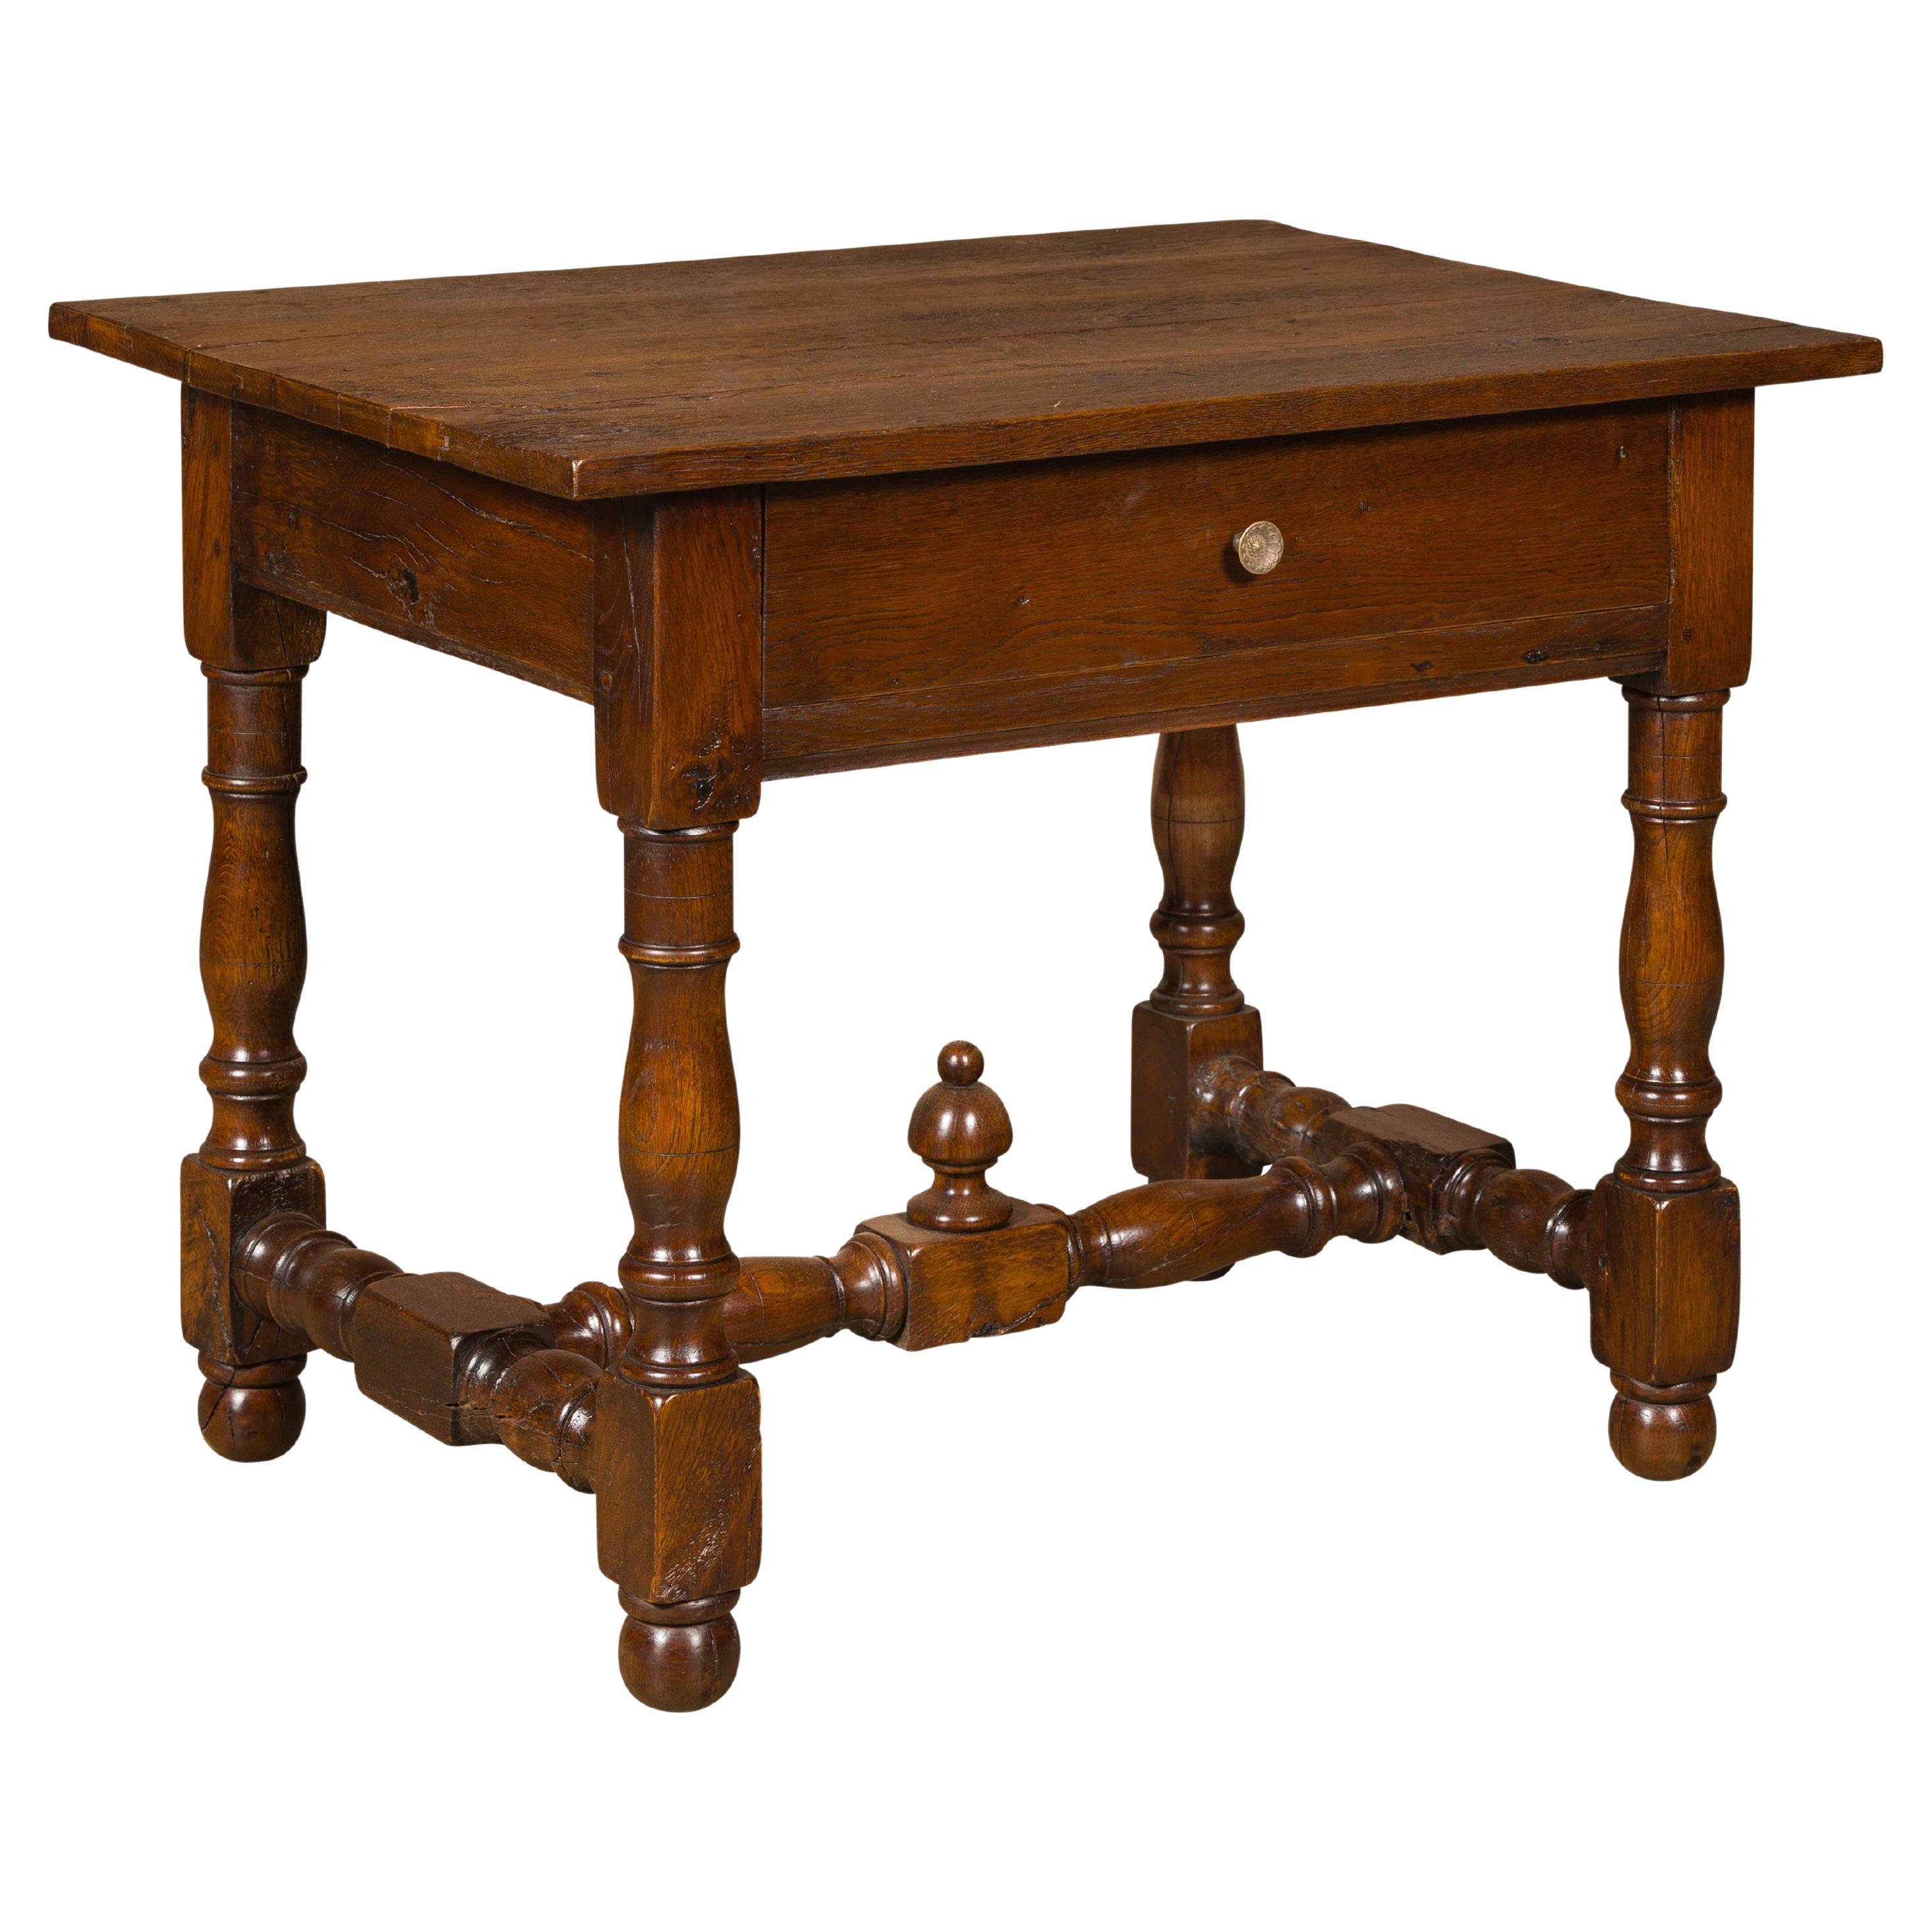 Table d'appoint en Oak Oak du 18ème siècle avec un seul tiroir et une base tournée